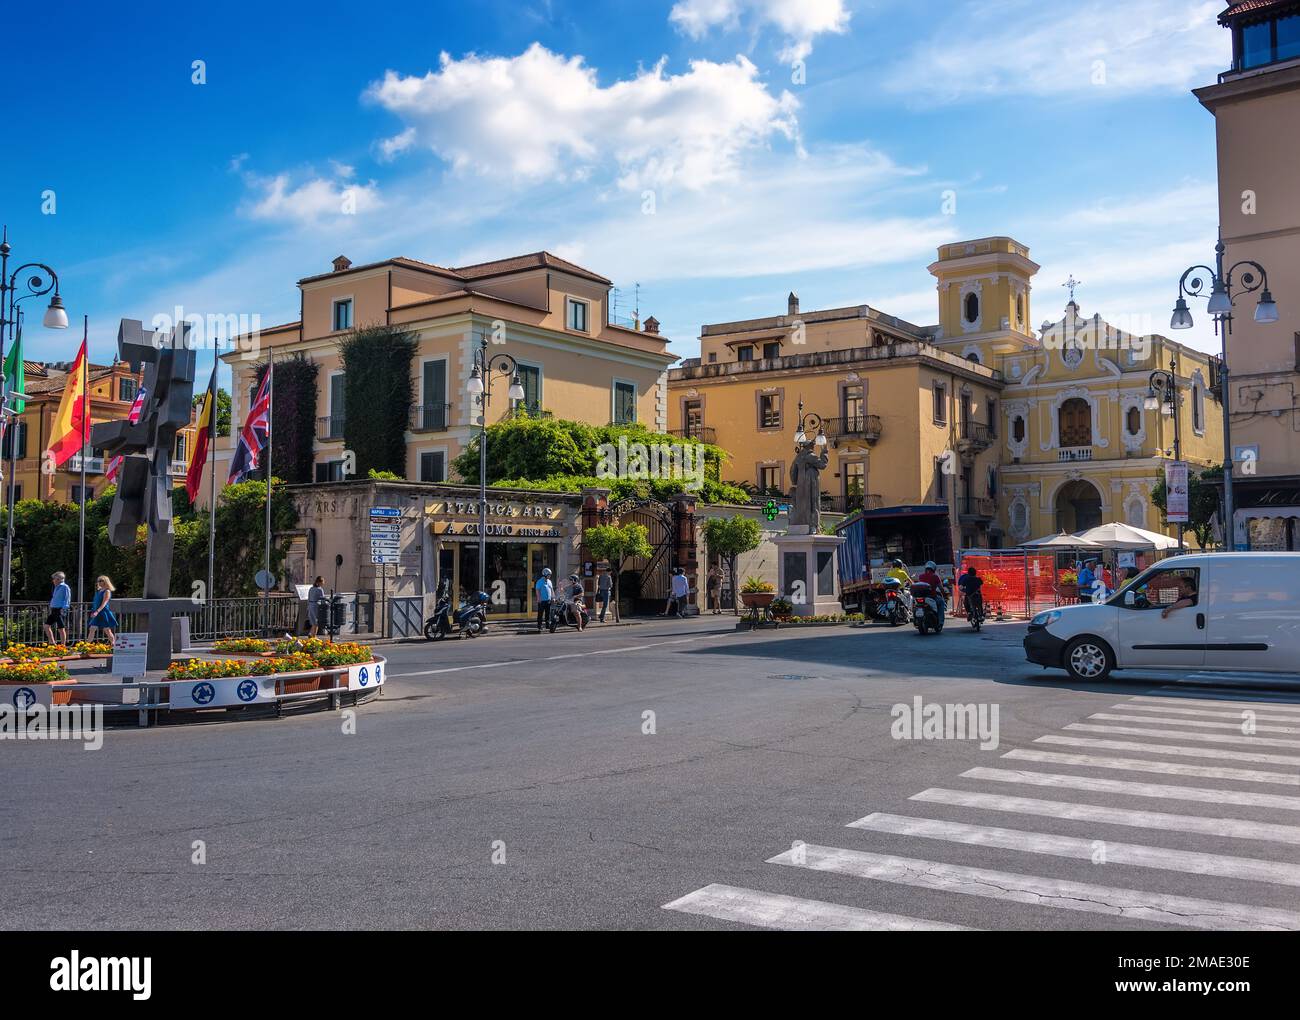 Sorrent, Italien - 11. Juni 2016: Zentraler Platz im Dorf Sorrent, Italien, an der Amalfiküste. Stockfoto